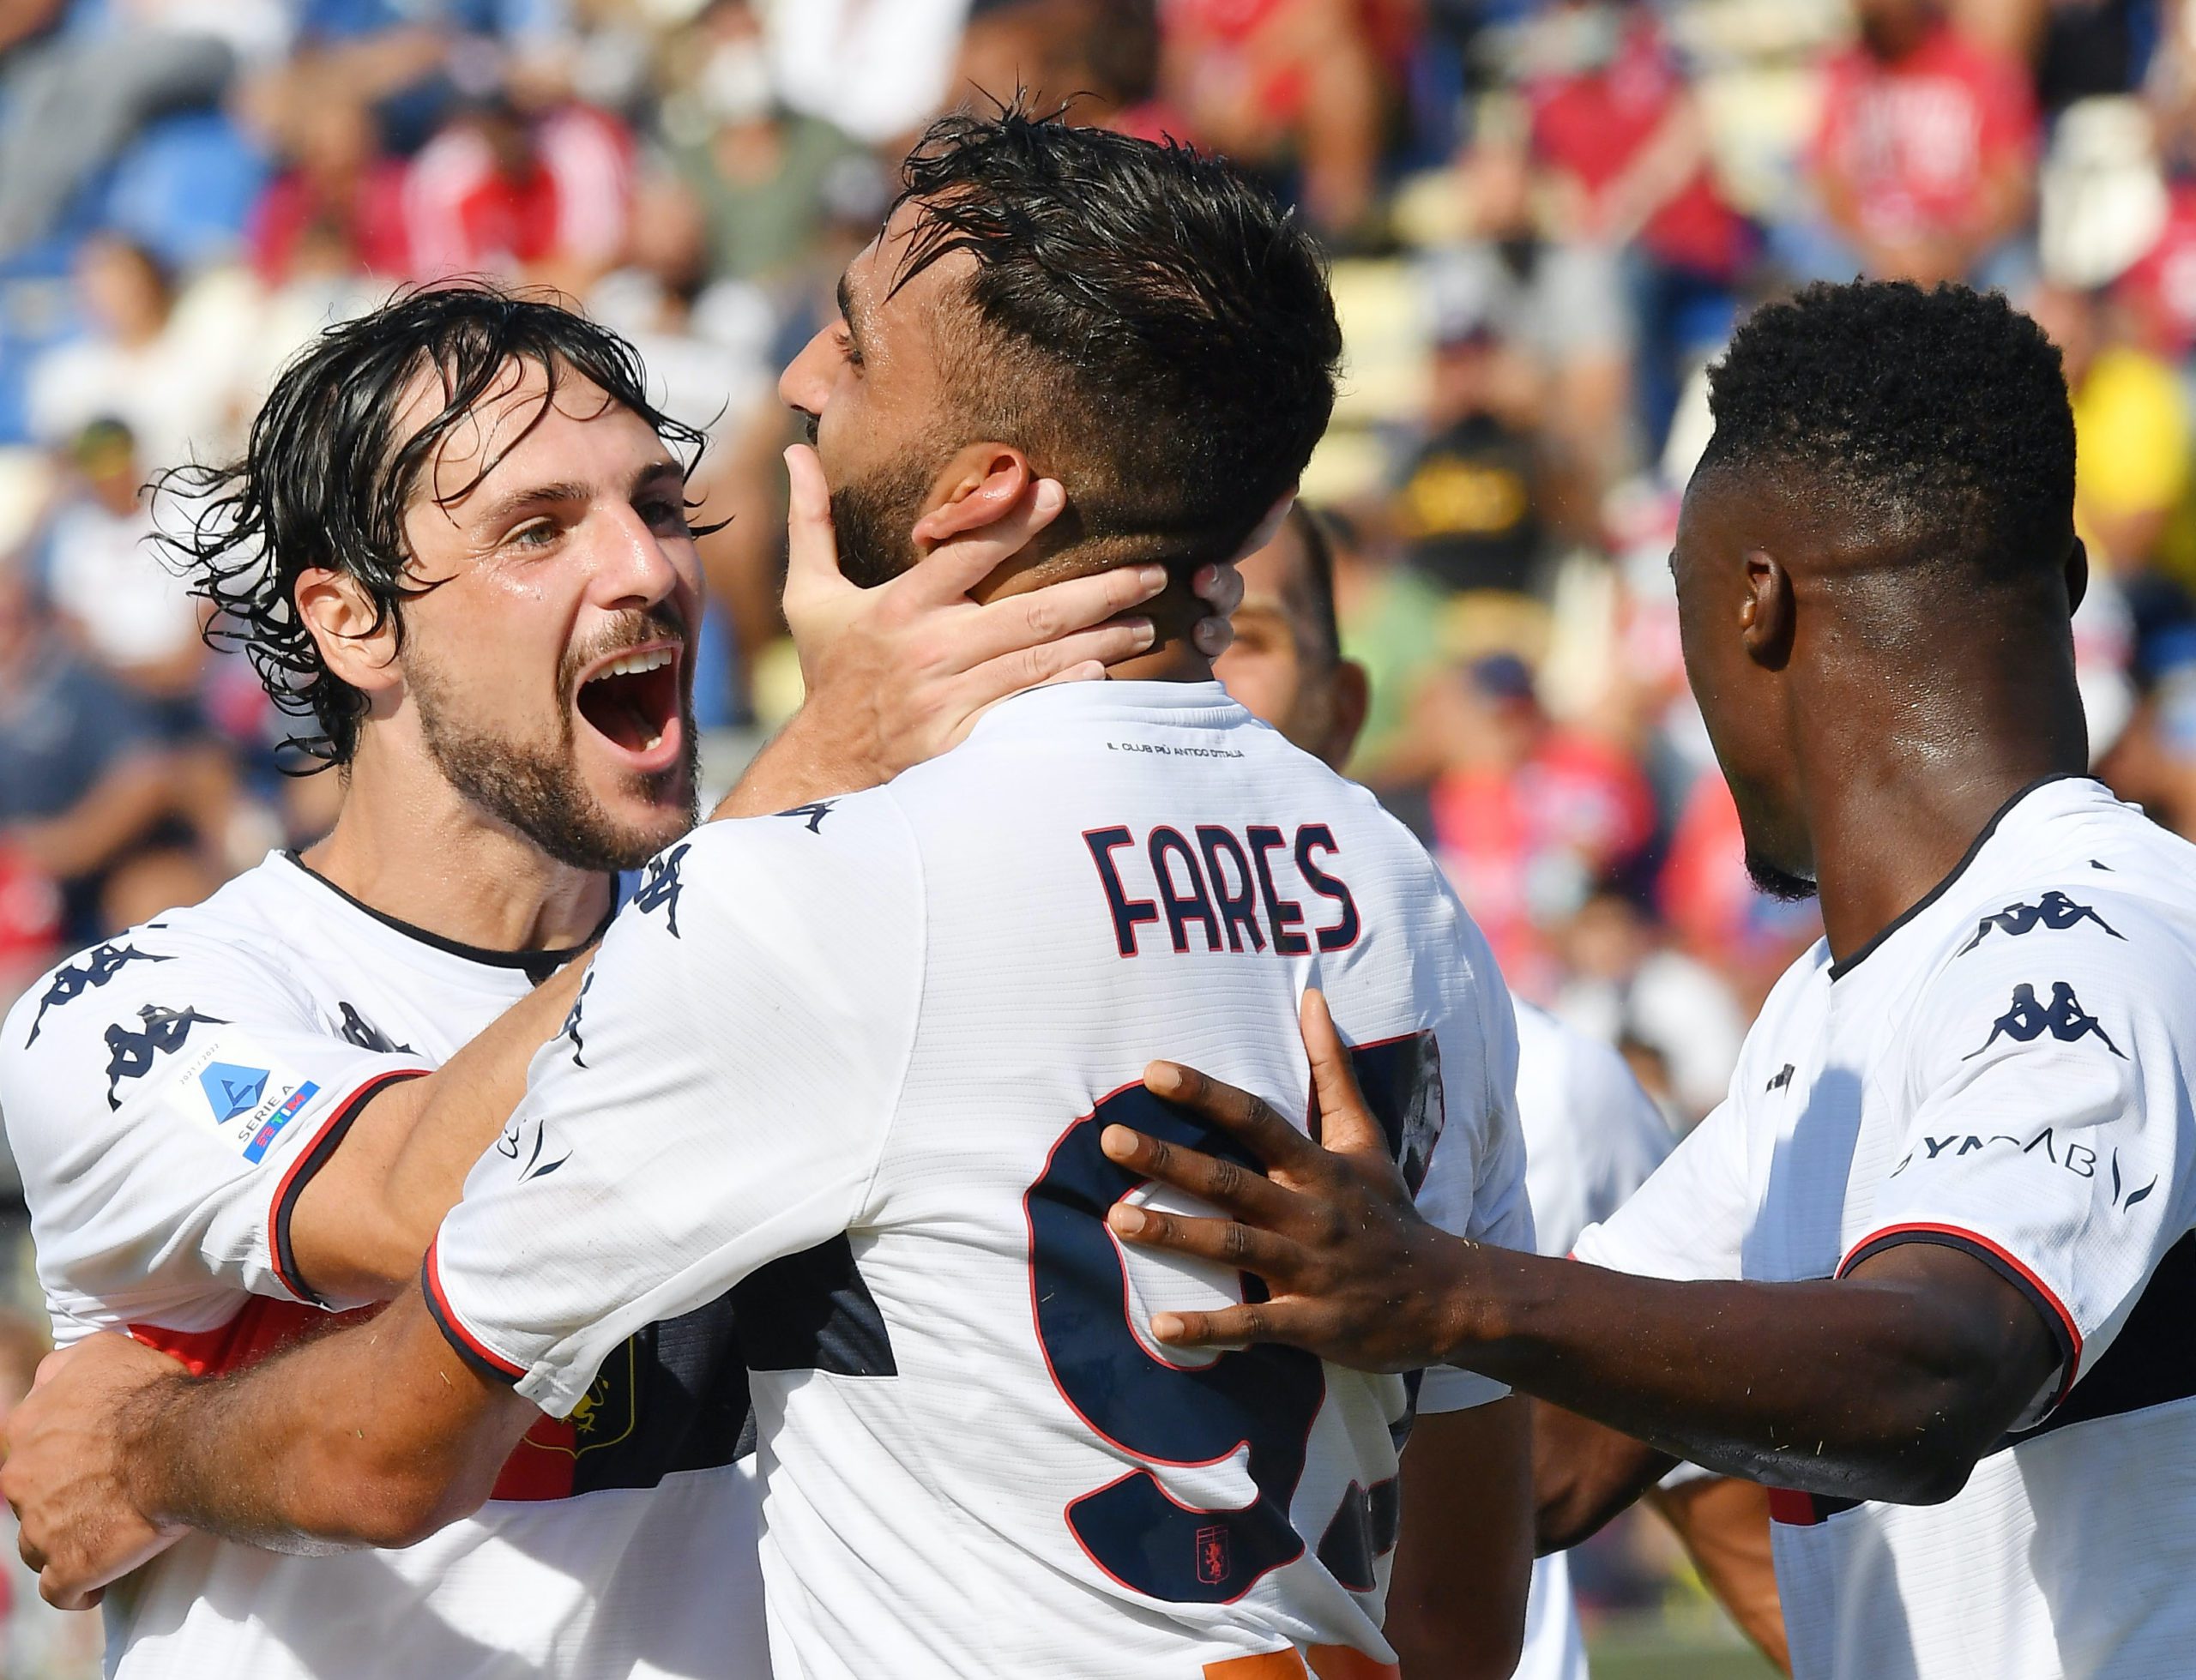 Cagliari-Genoa 2-3: Fares ribalta i sardi nella ripresa - la